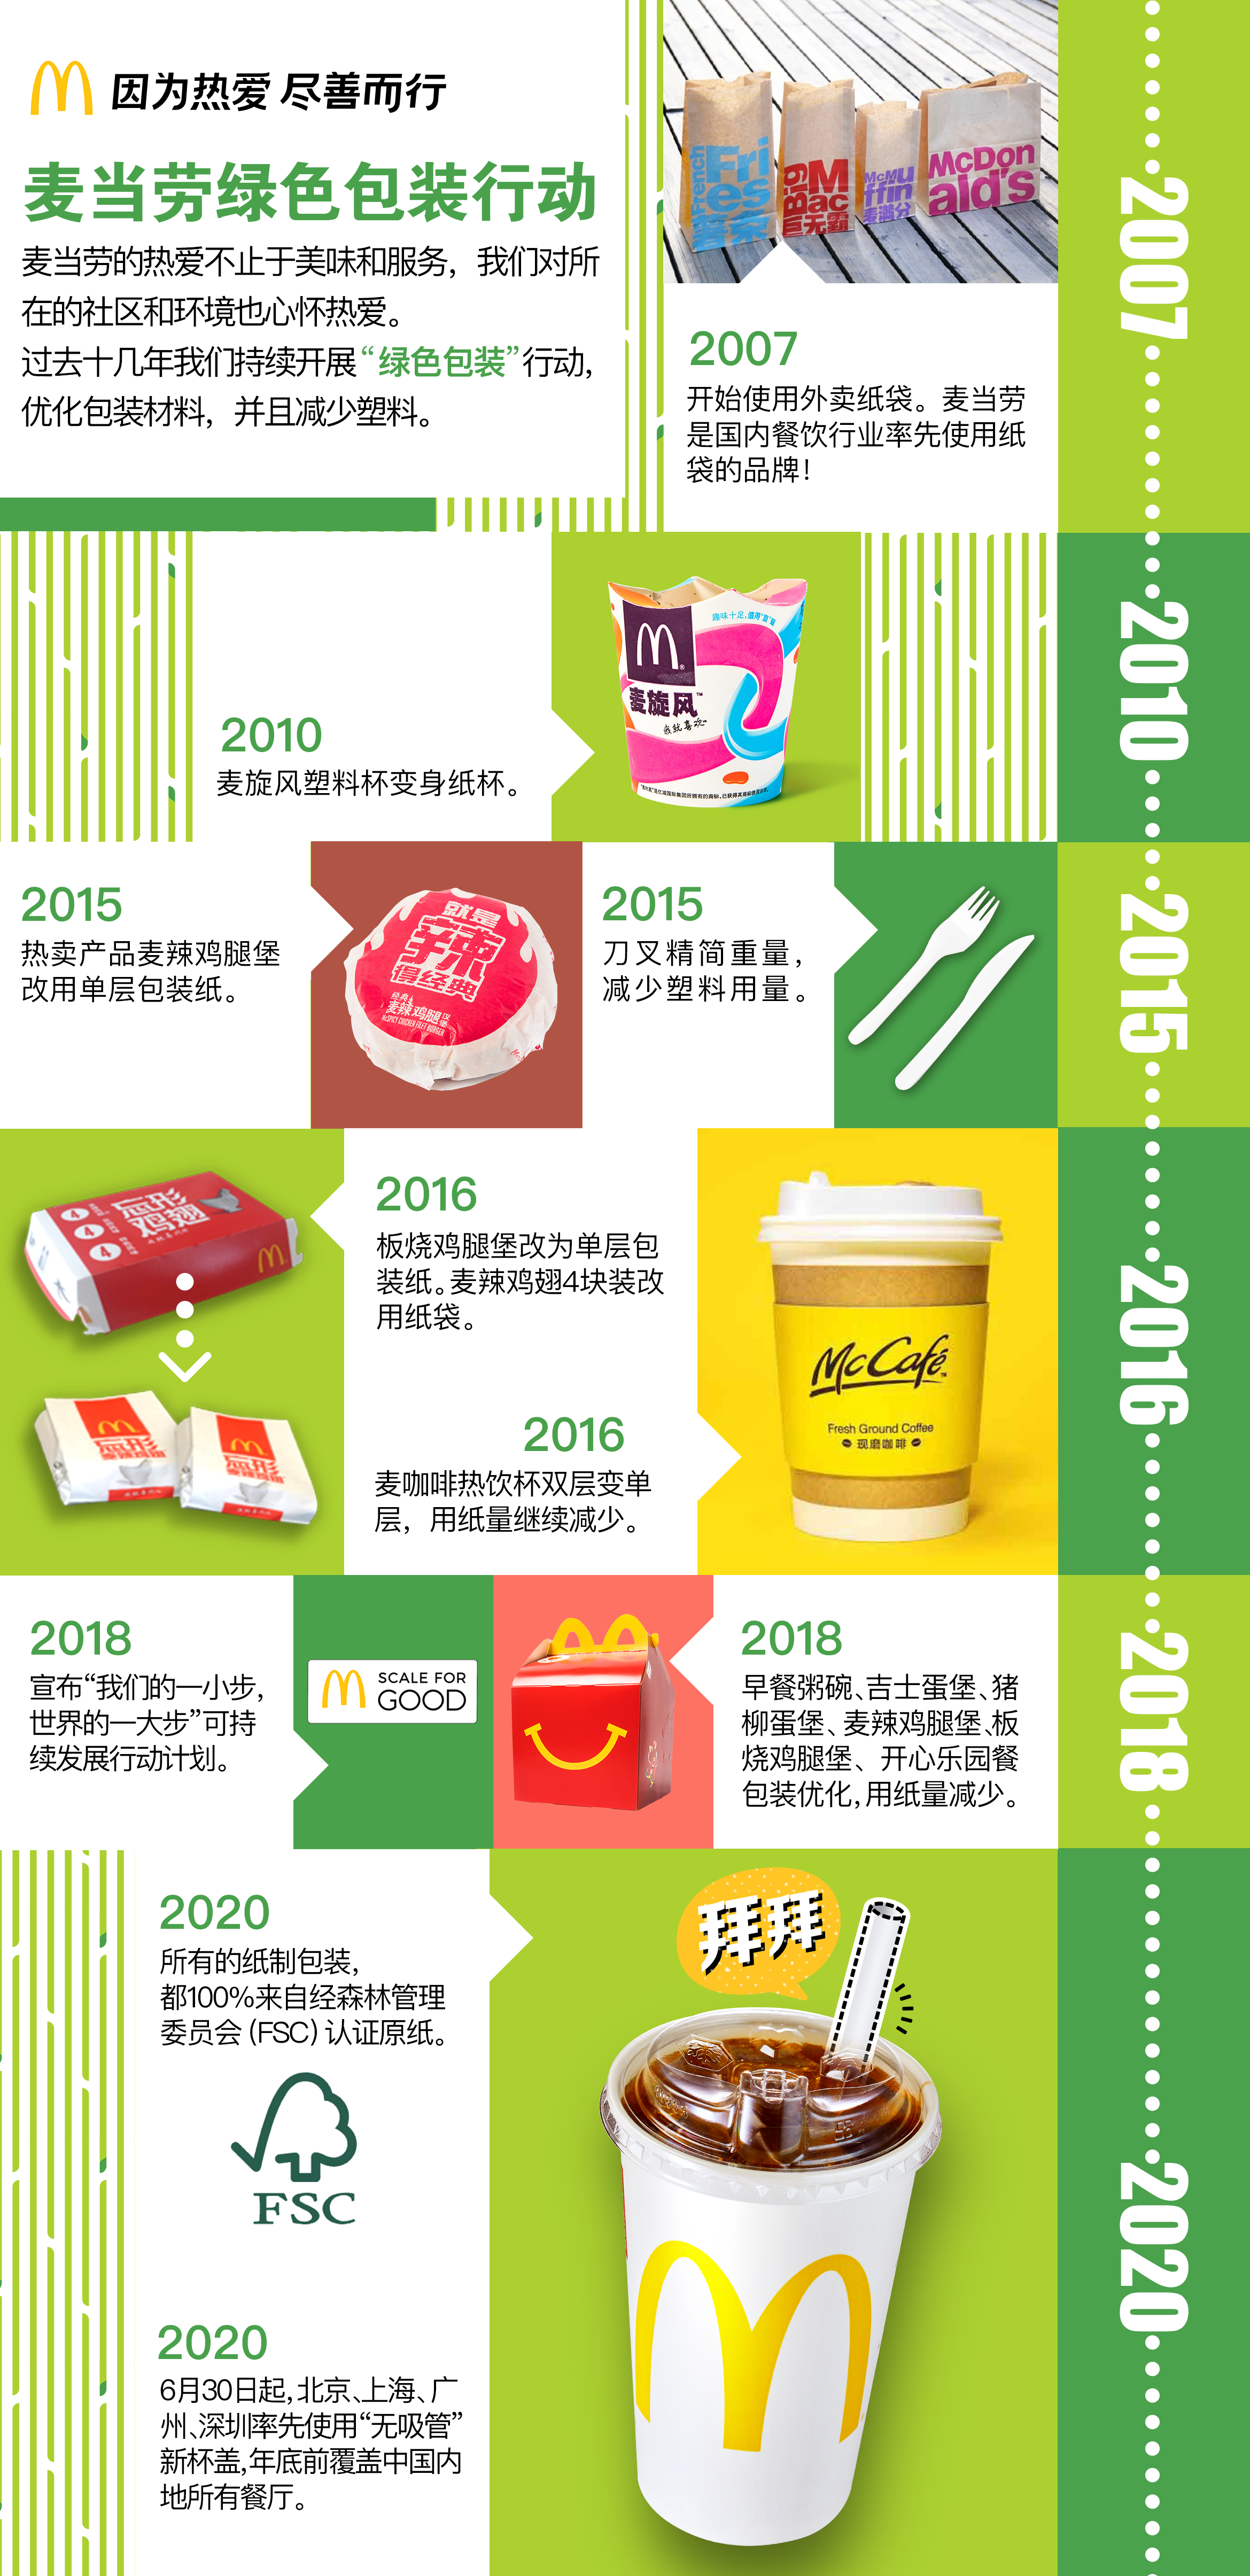 麦当劳中国宣布逐步停用塑料吸管,预计每年减少400吨塑料